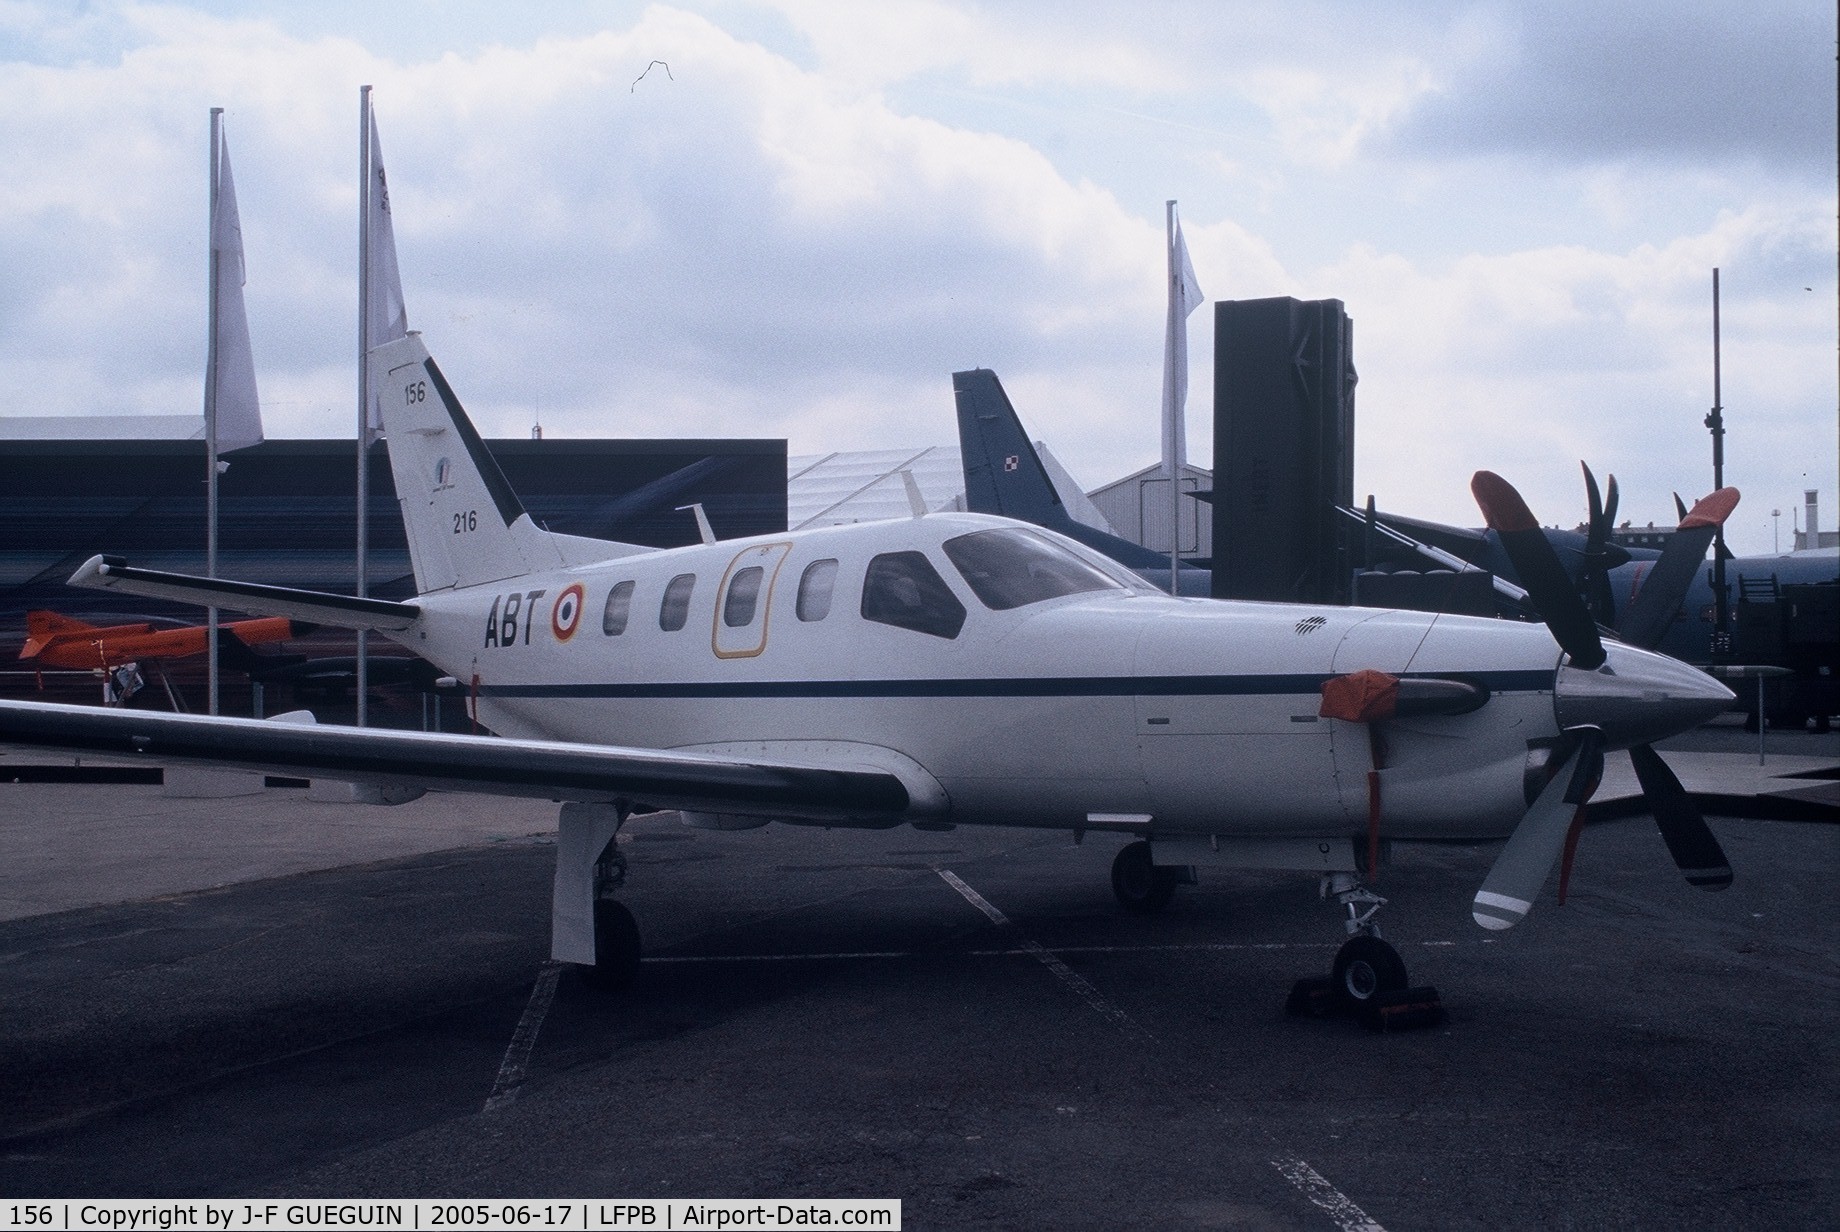 156, 1999 Socata TBM-700 C/N 156, On display at paris-Le Bourget 2005 airshow.